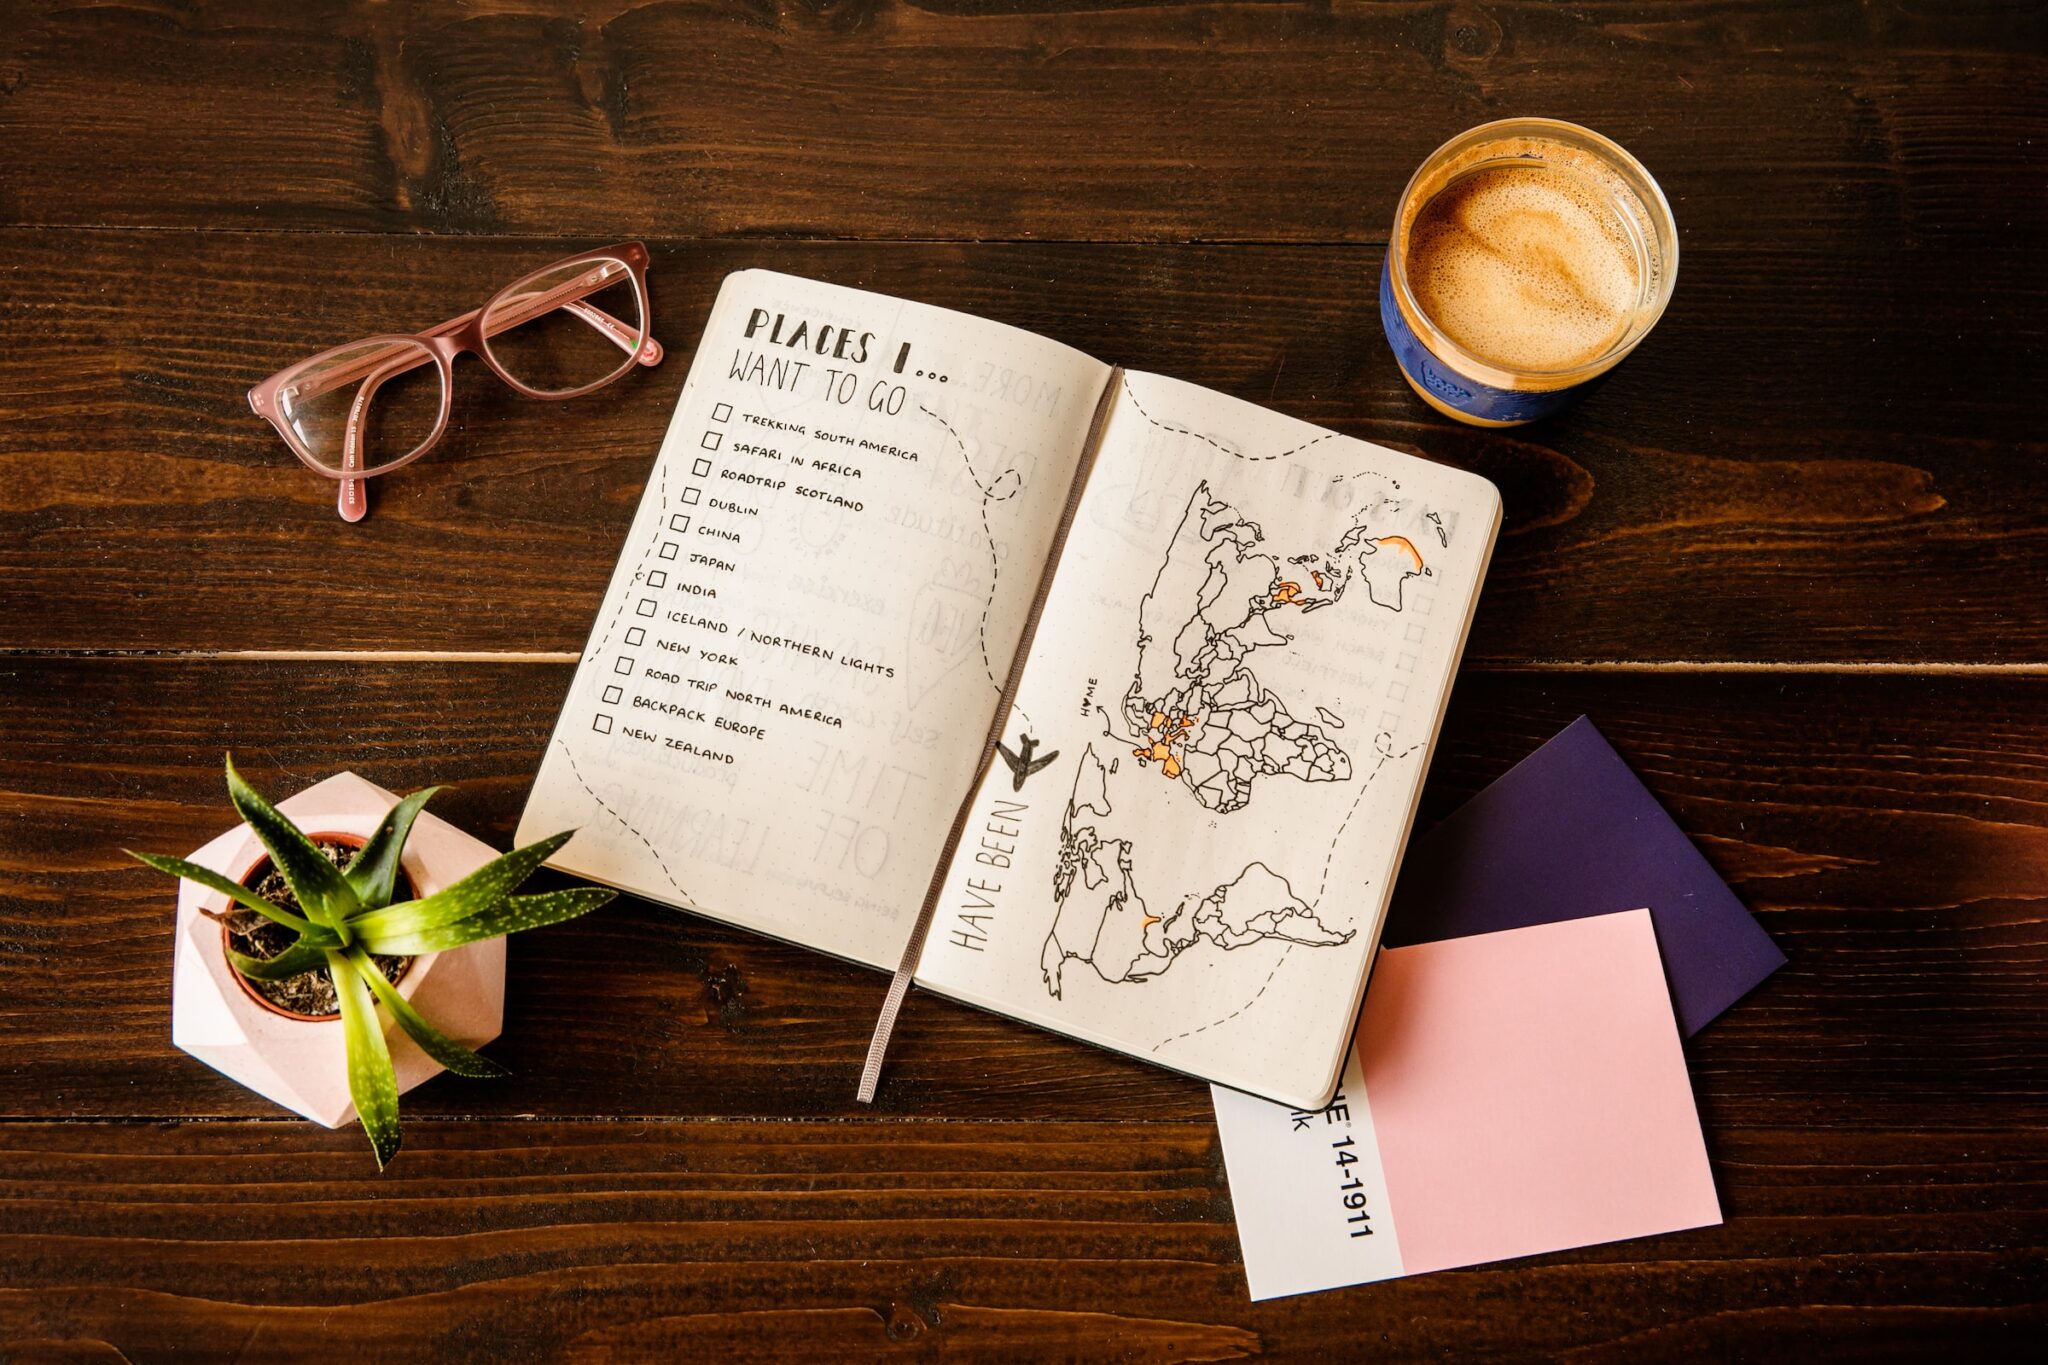 mapa, libreta, lentes, café y otras herramientas para planear viajes